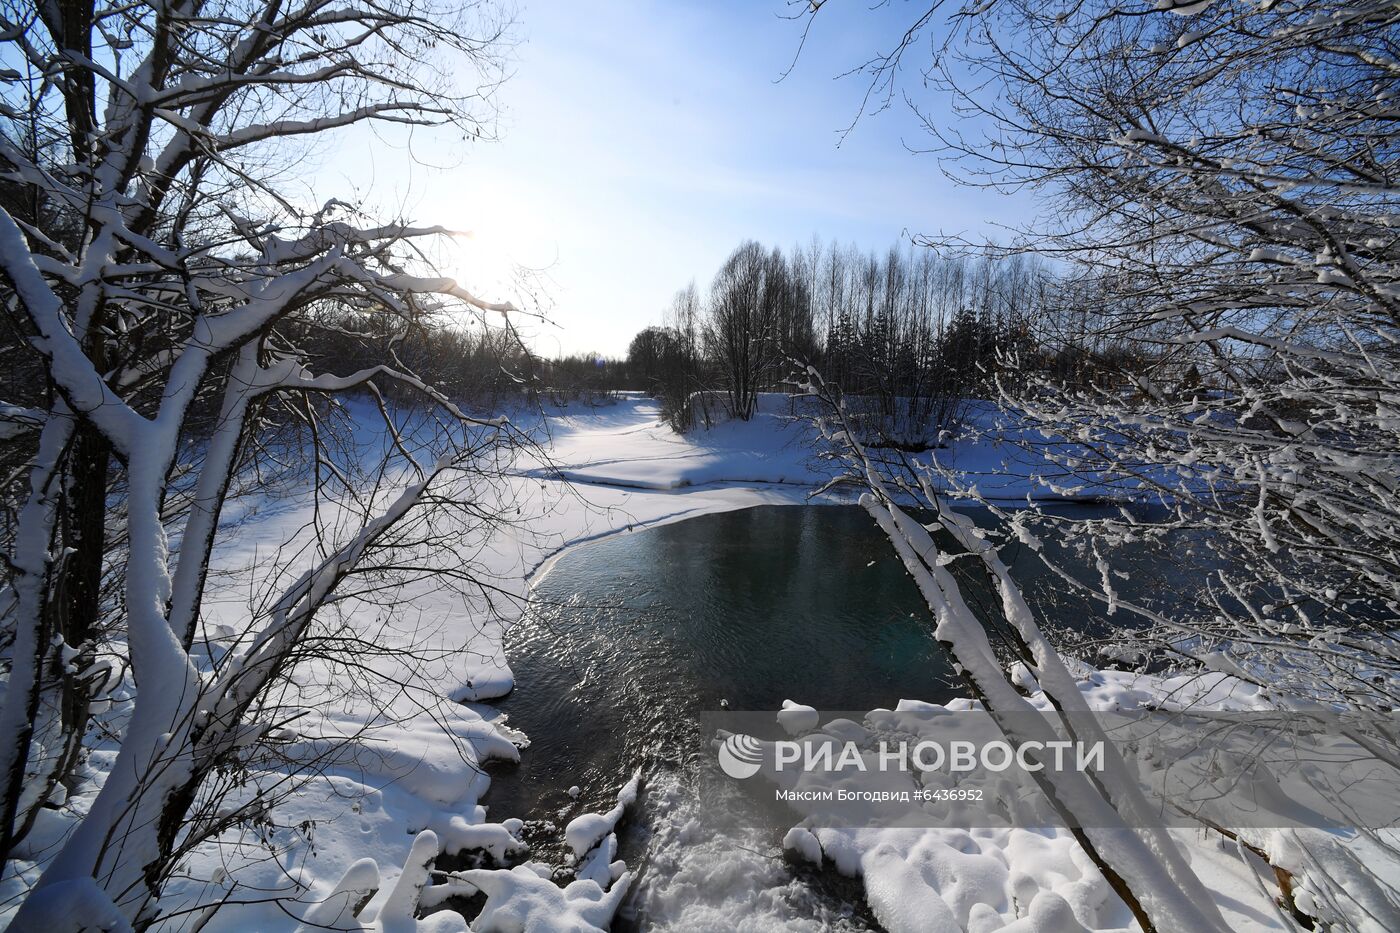 Природный заповедник "Голубые озёра" в Татарстане